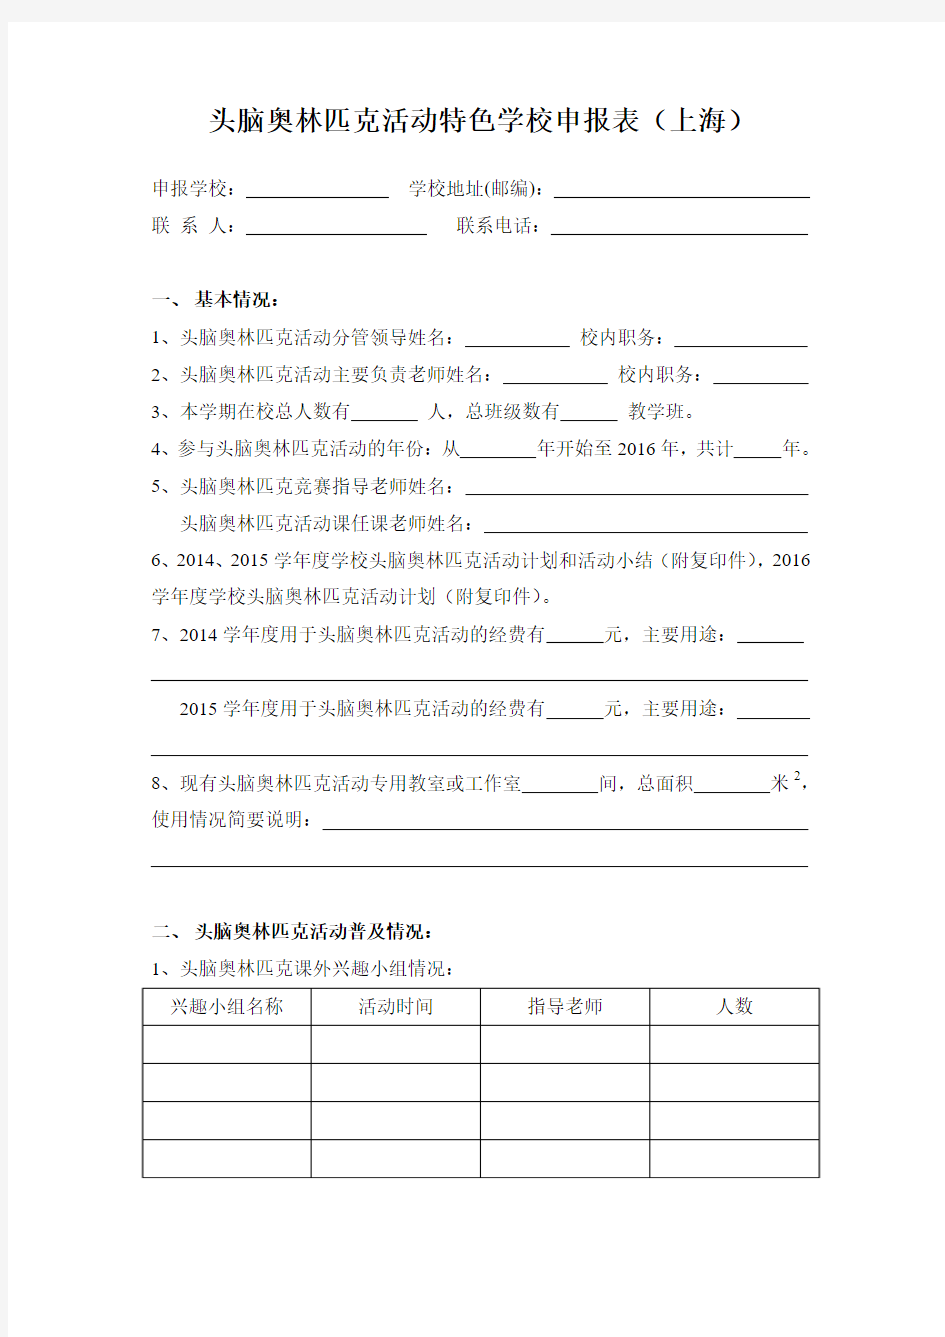 头脑奥林匹克活动特色学校申报表(上海)